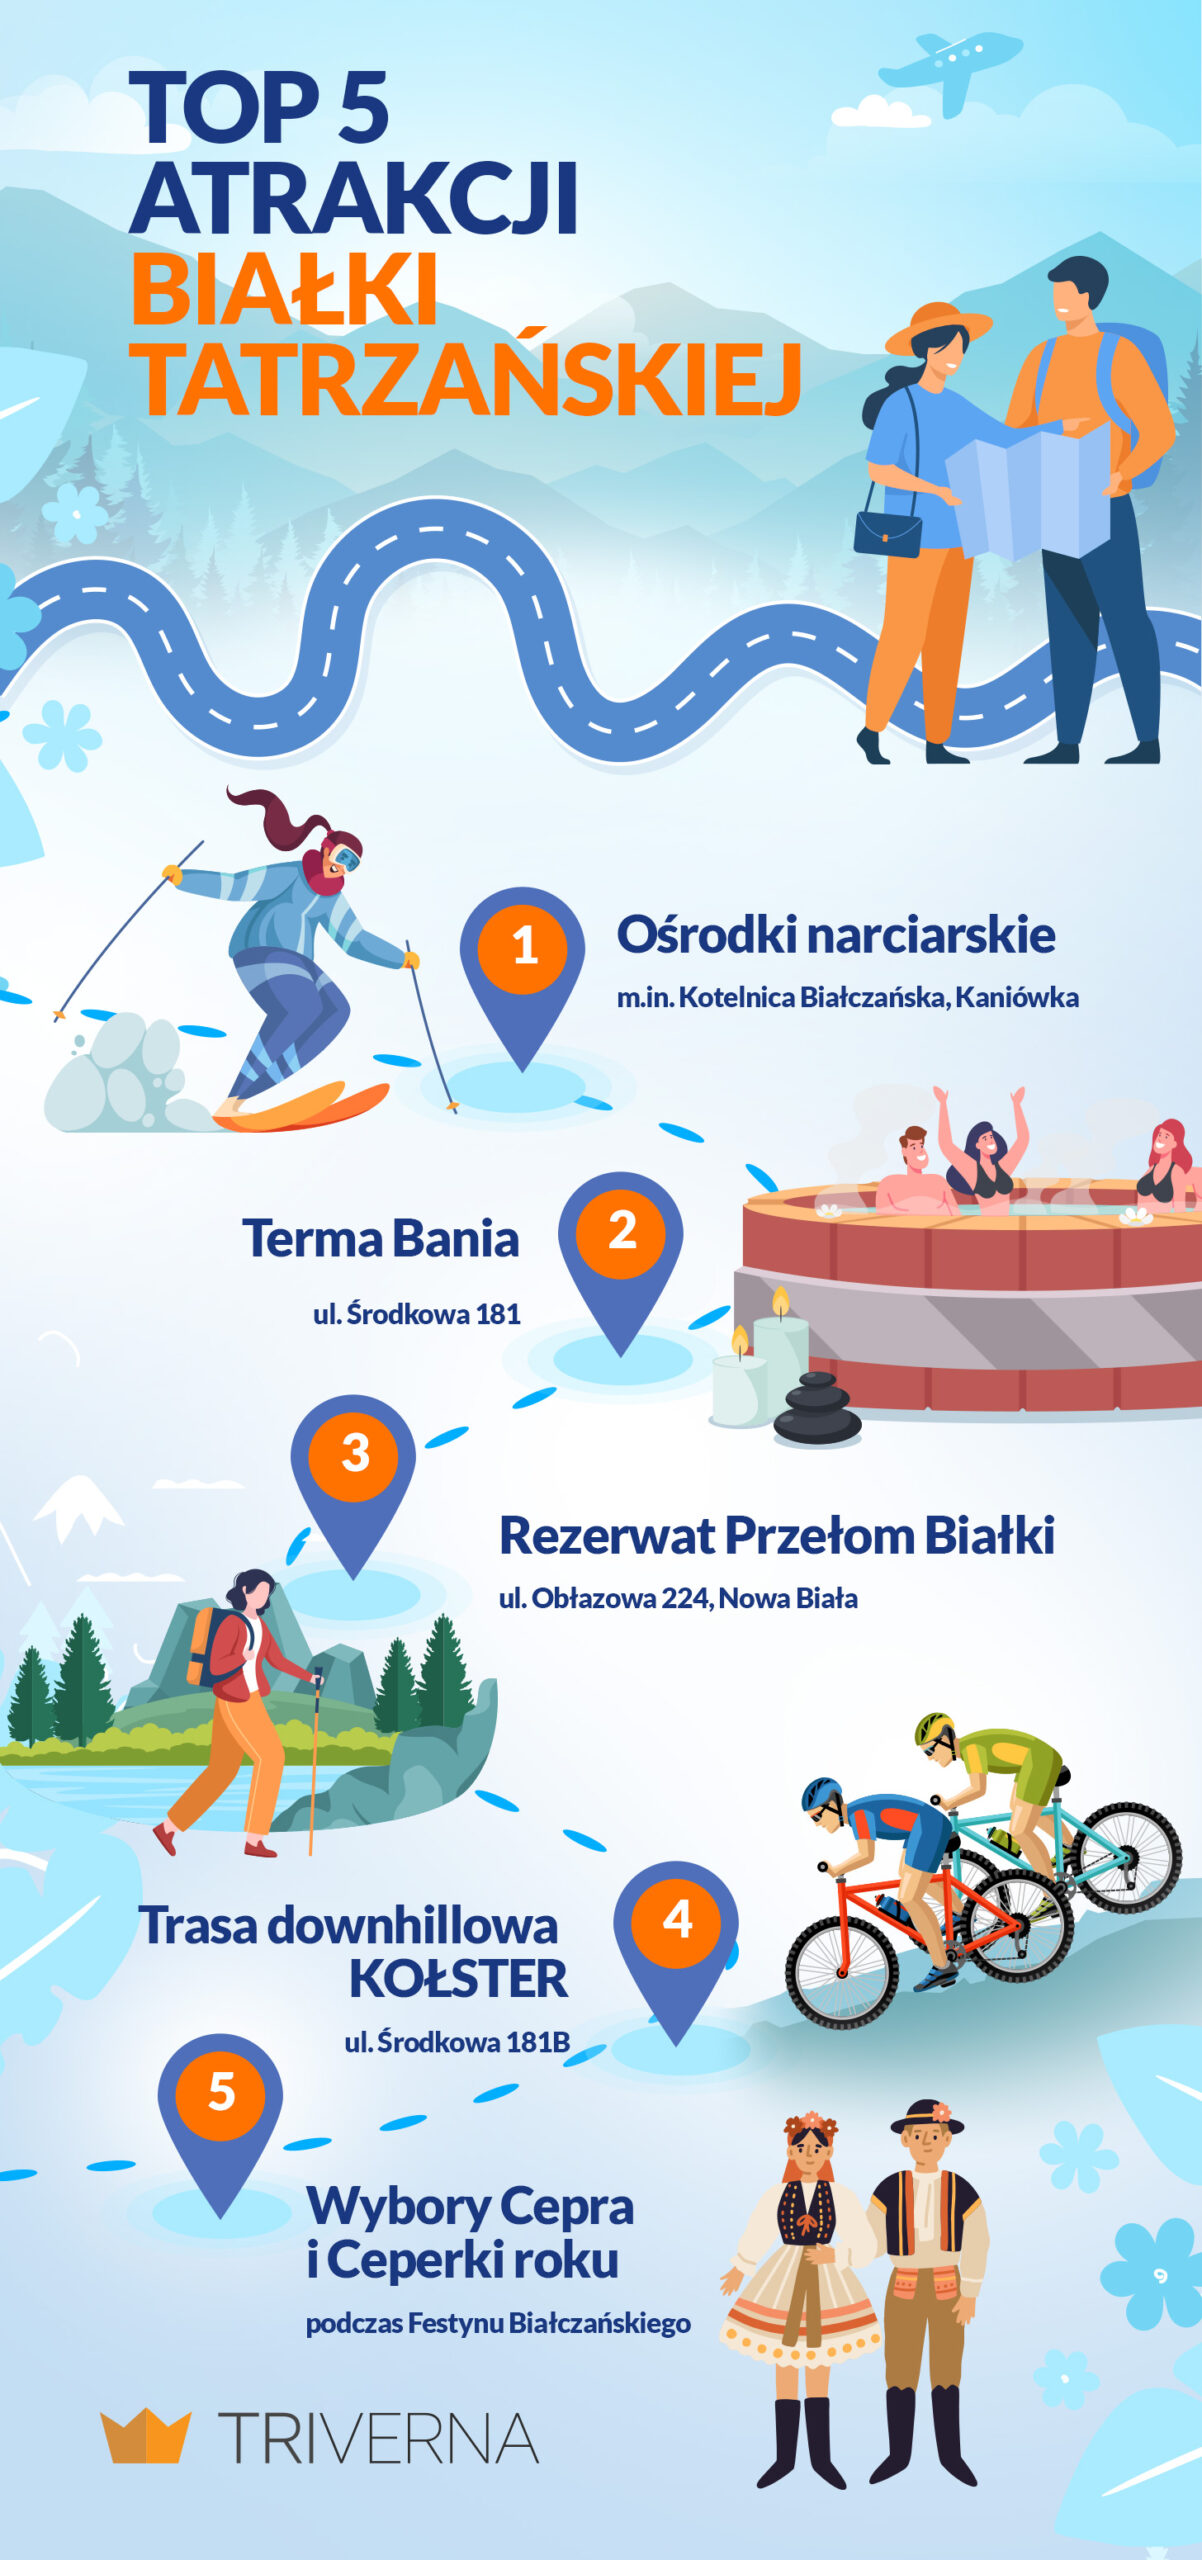 Top atrakcje Białki Tatrzańskiej - infografika